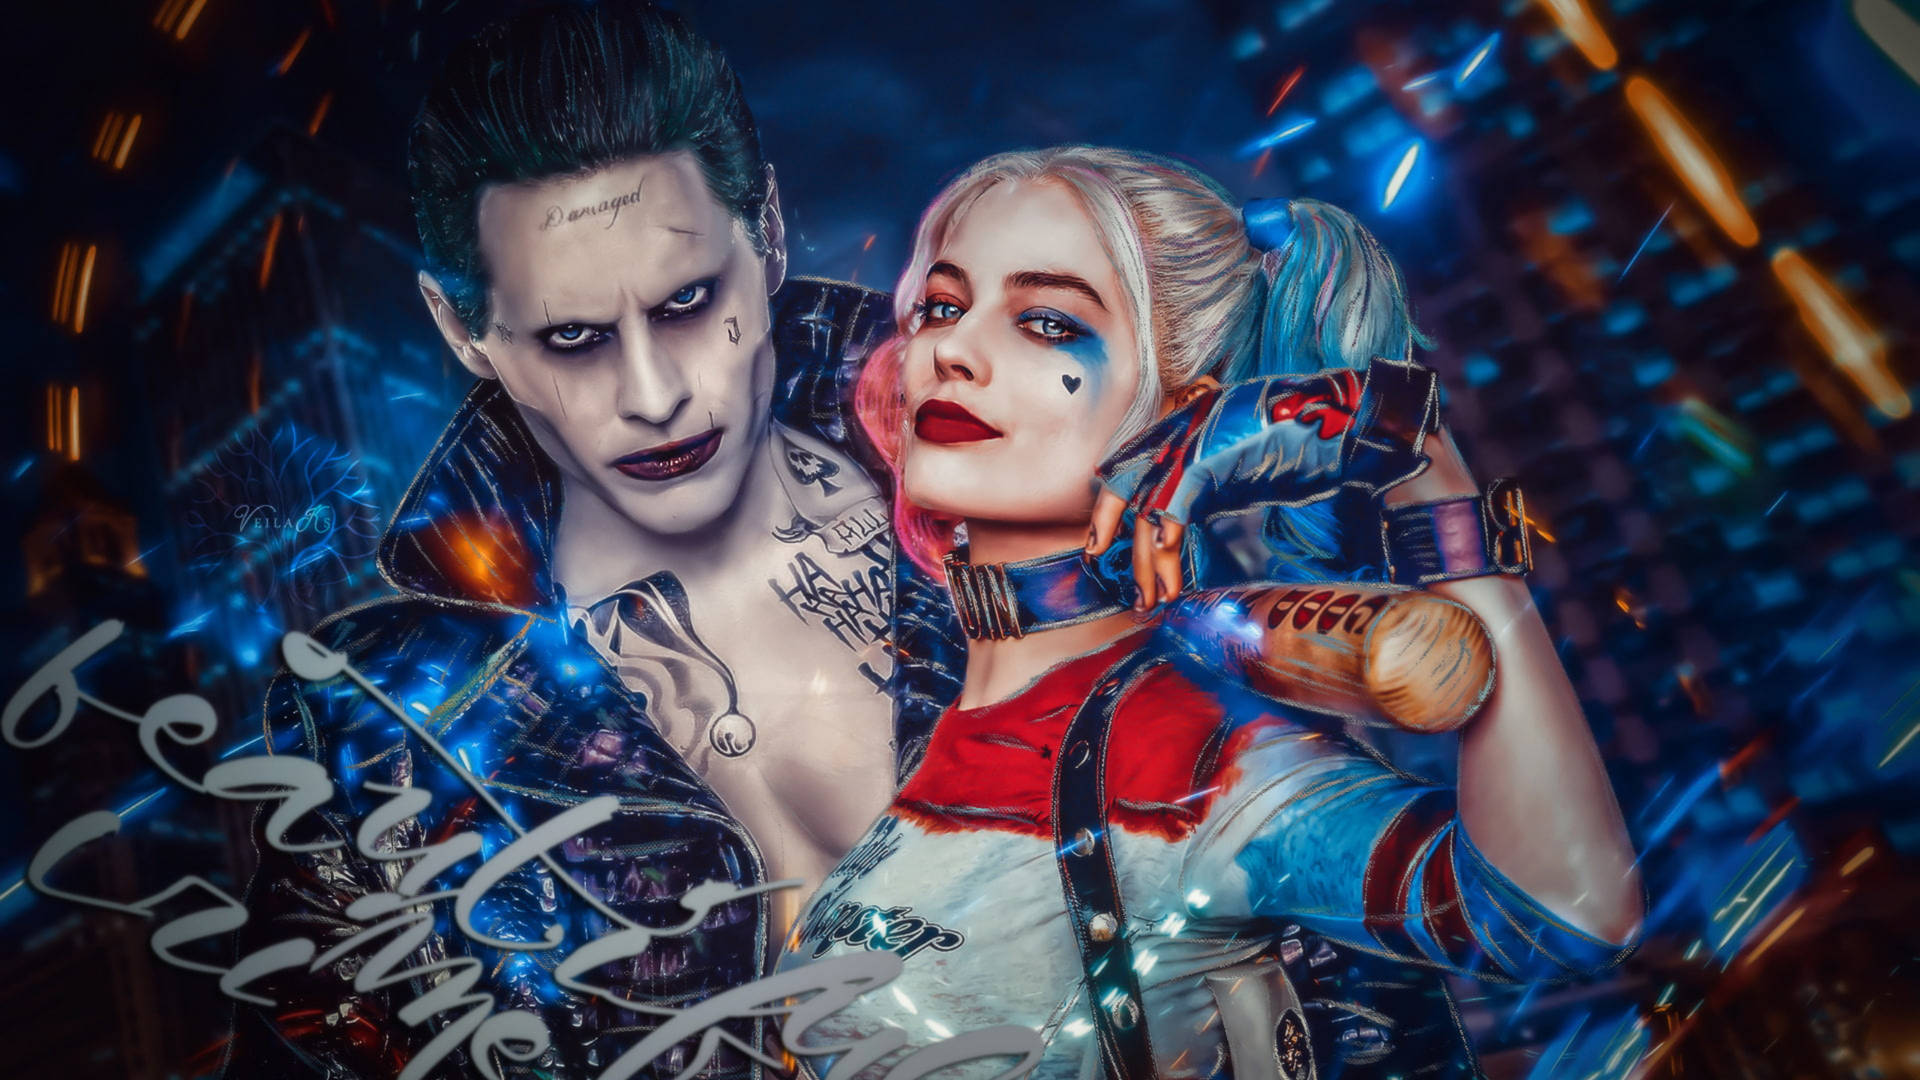 The Joker&Harley Quinn - A Love-Hate Story Wallpaper